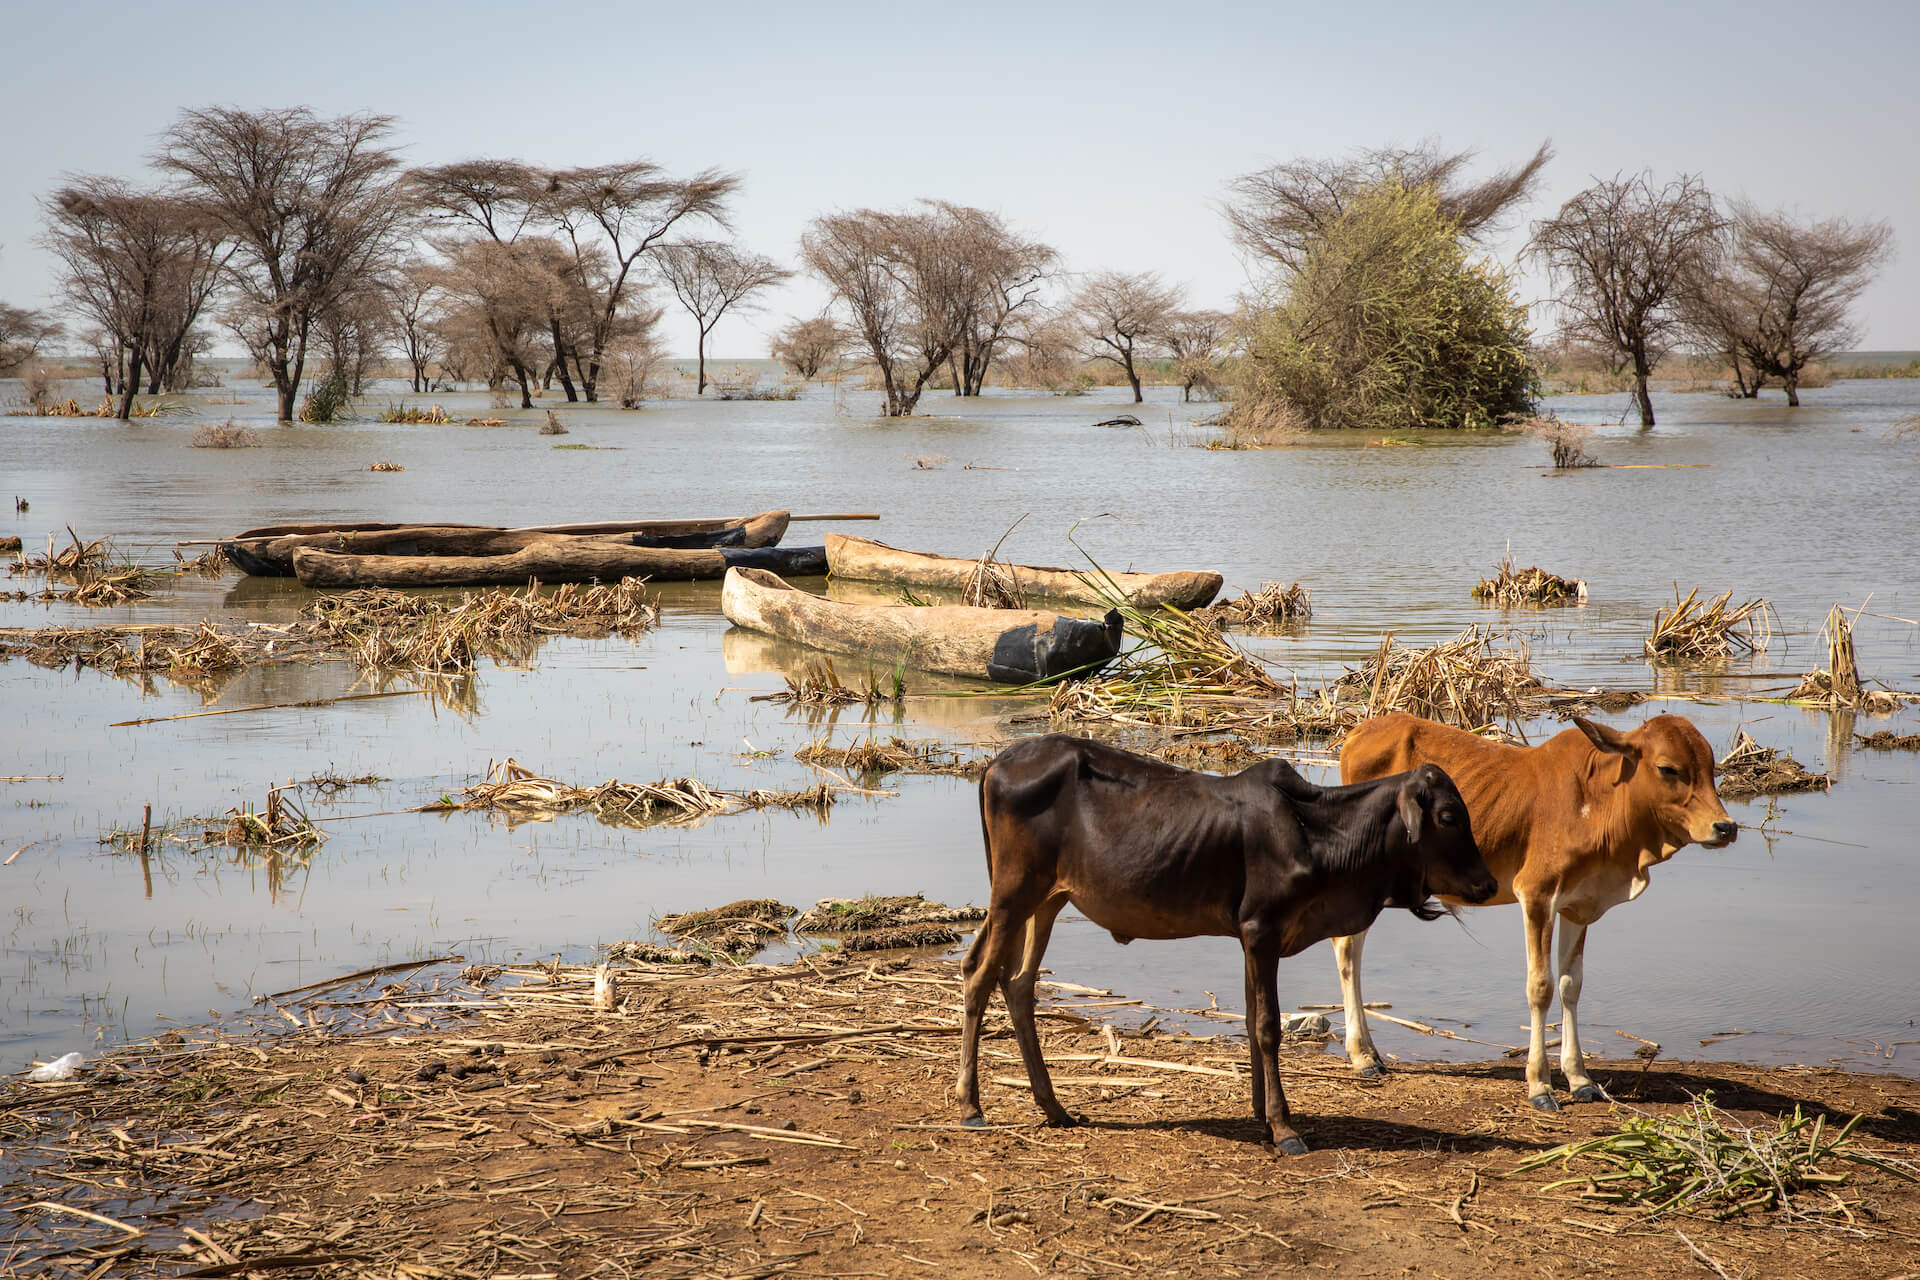 Vesnice Hado u rozlitého jezera Turkana, Dassanech - Planeta lidí